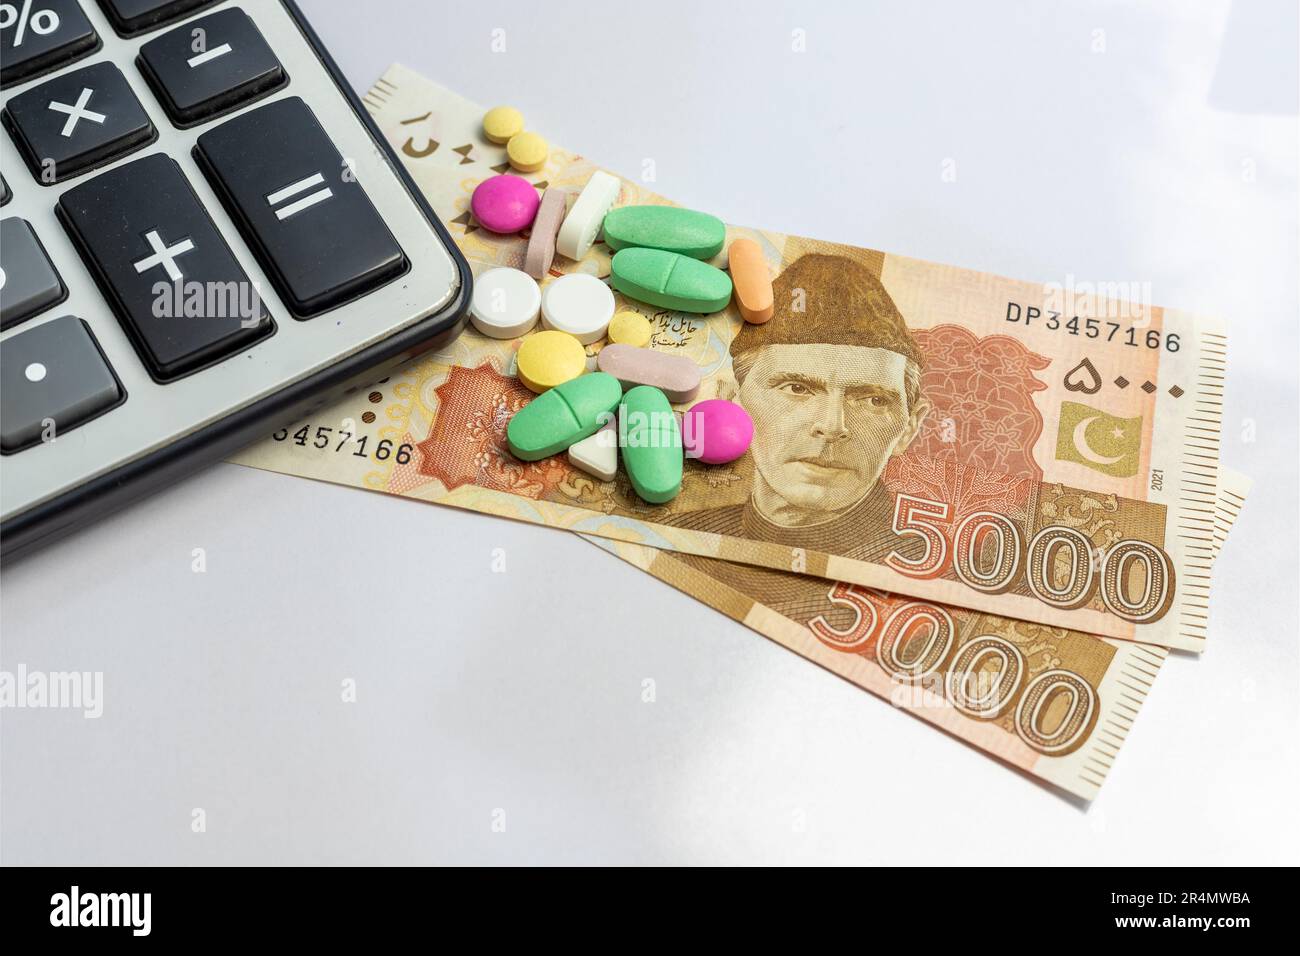 Farmaci e calcolatrice sulla valuta pakistana. Costo del concetto di droga. Foto Stock